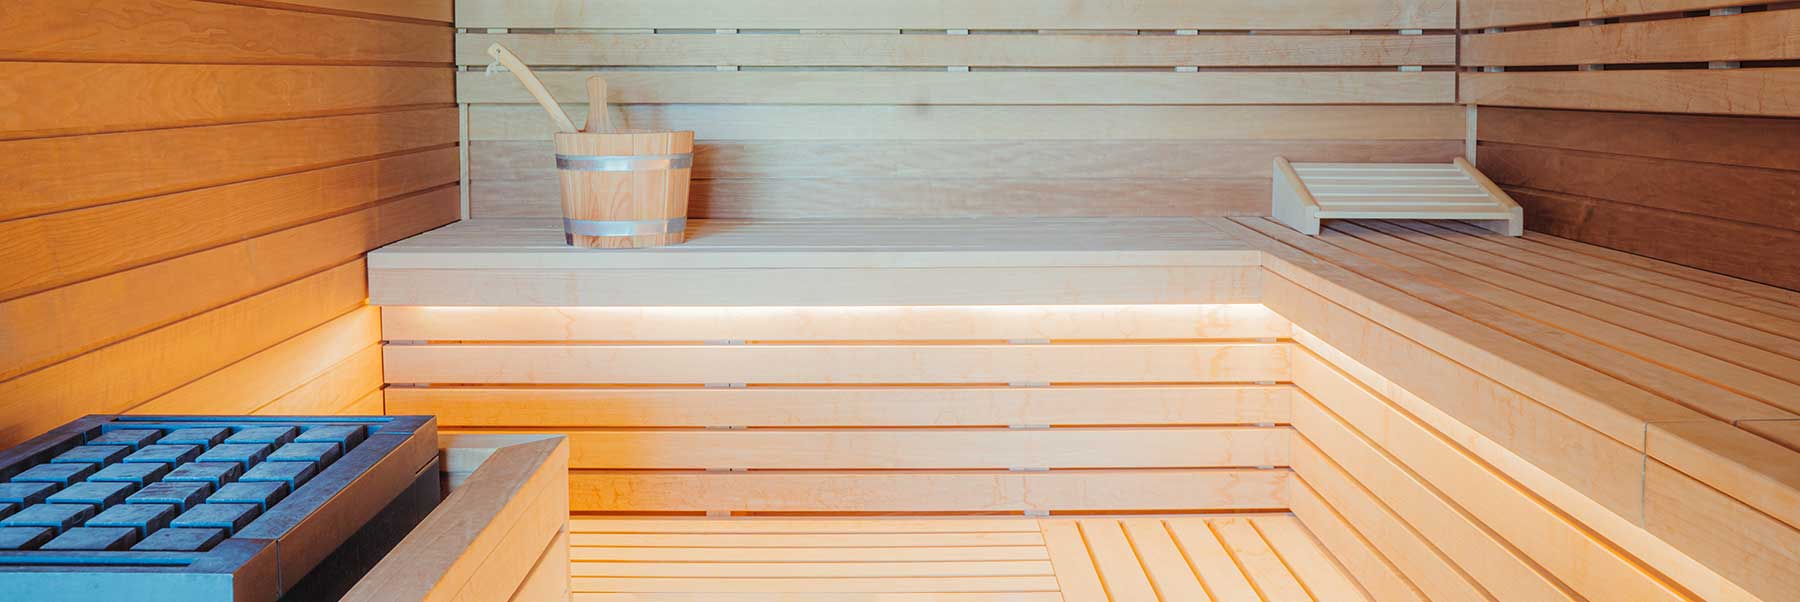 Achat Sauna Interieur Installation Annecy